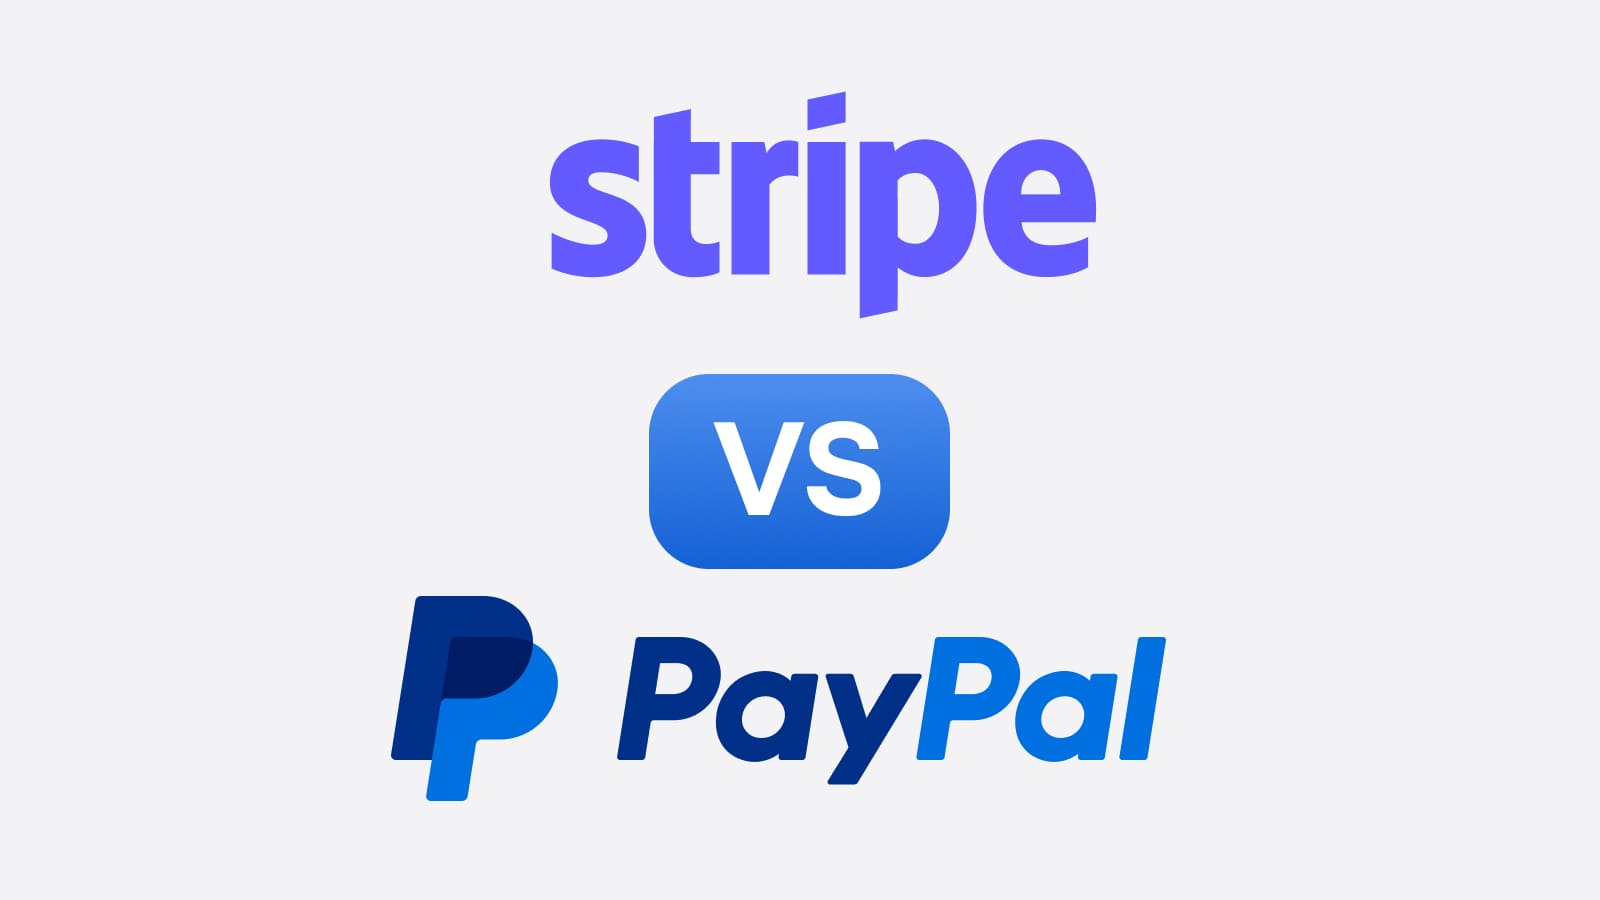 Выбирая способ для получения платежей, многие останавливаются на Stripe или PayPal